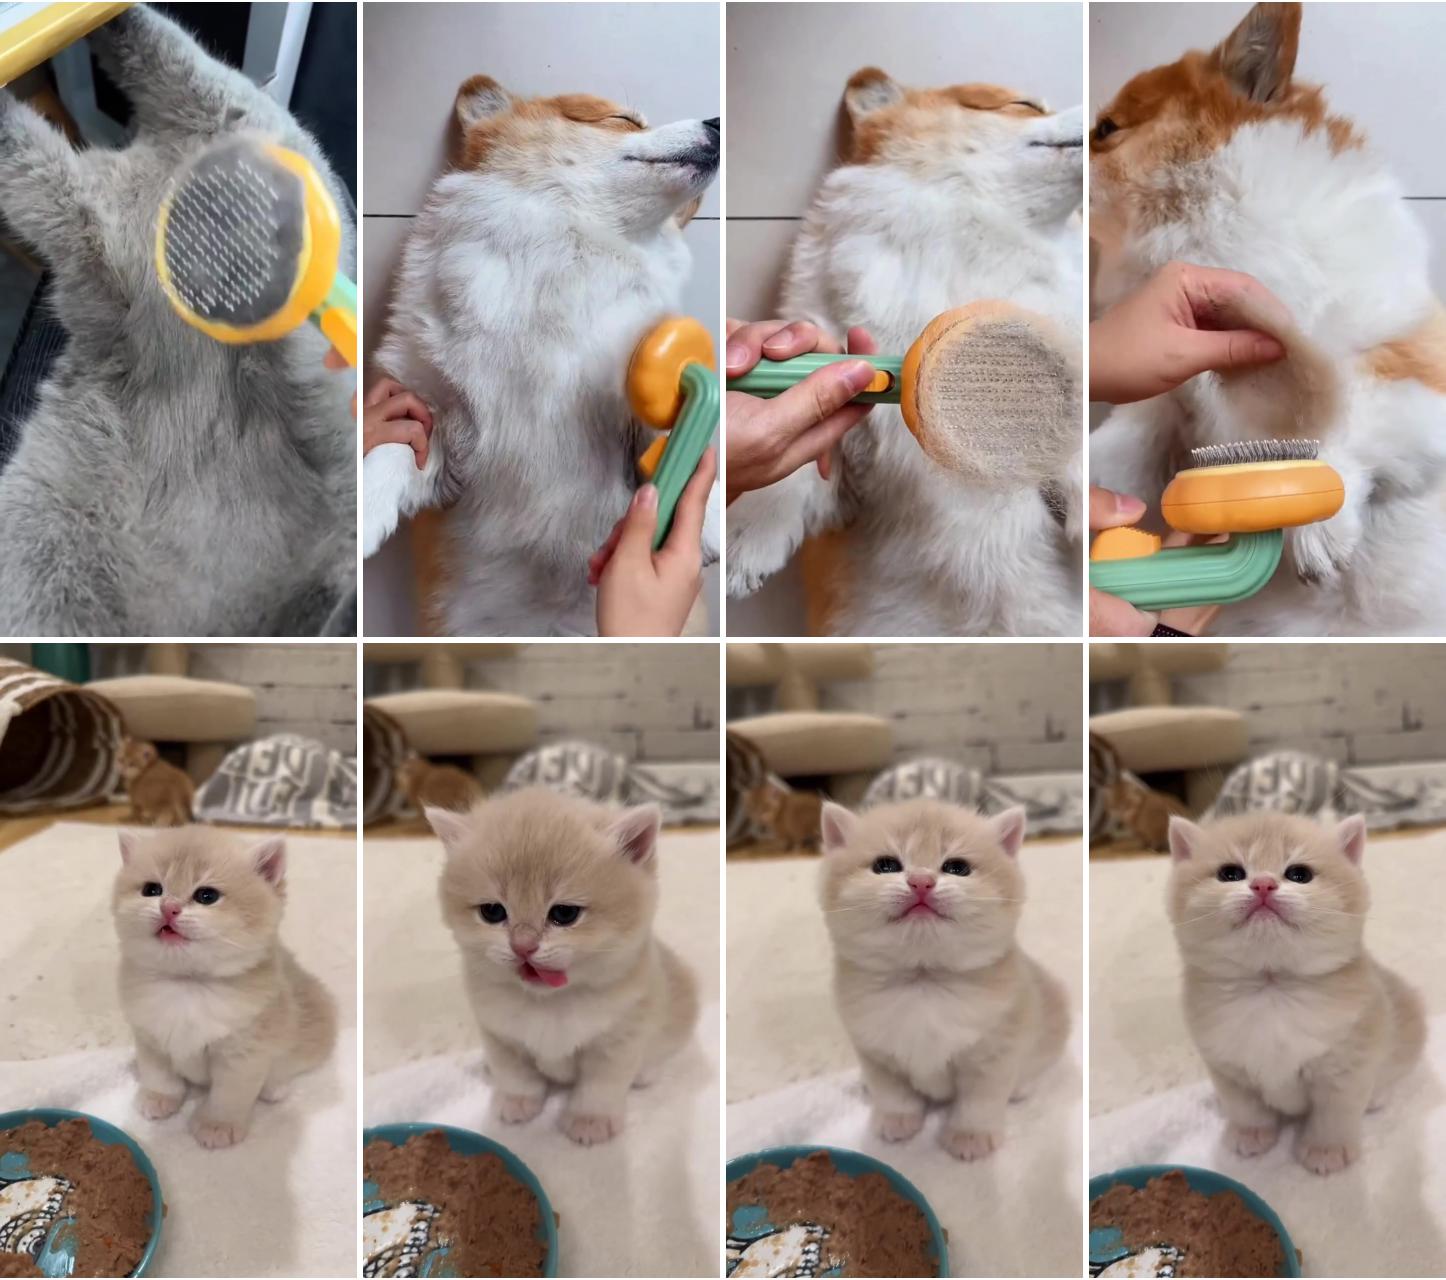 Pet product - cat comb; cute cat